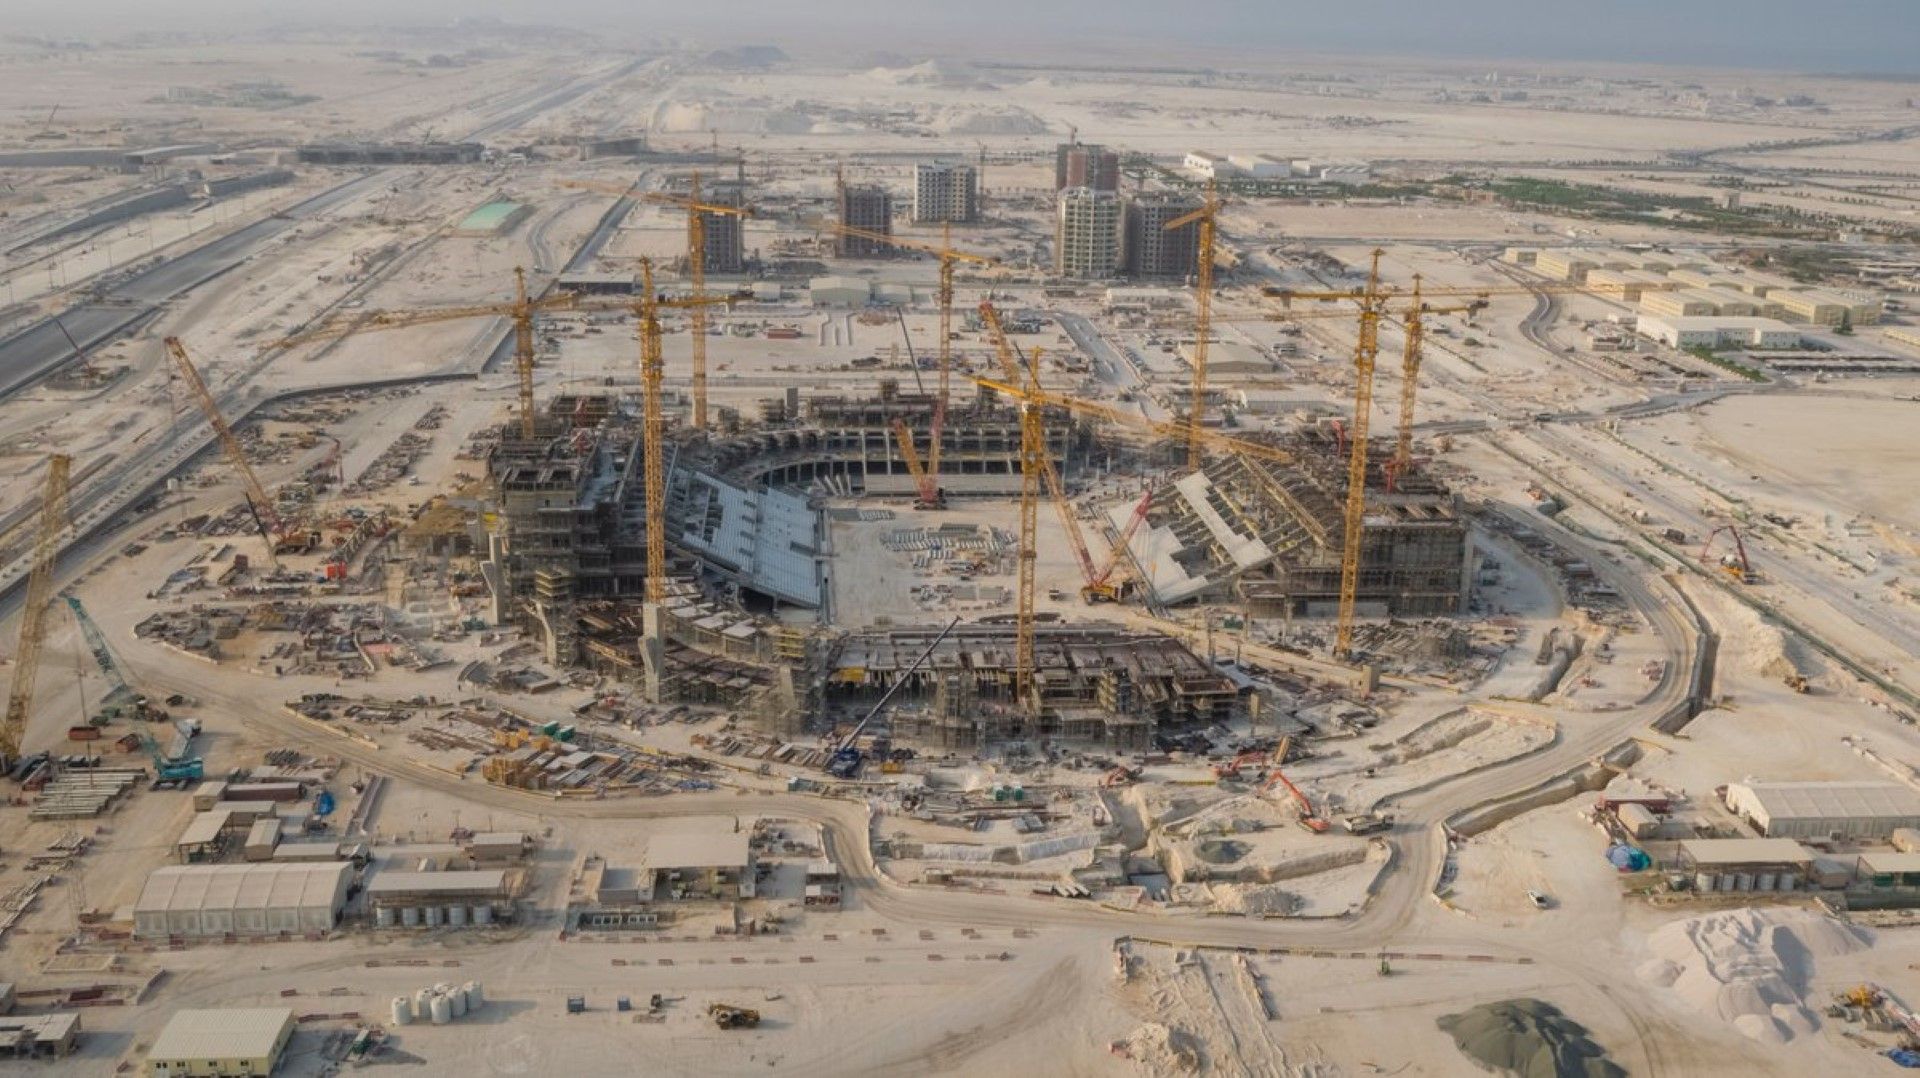 "4 години до Мондиала - ето как изглеждат стадионите в Катар"